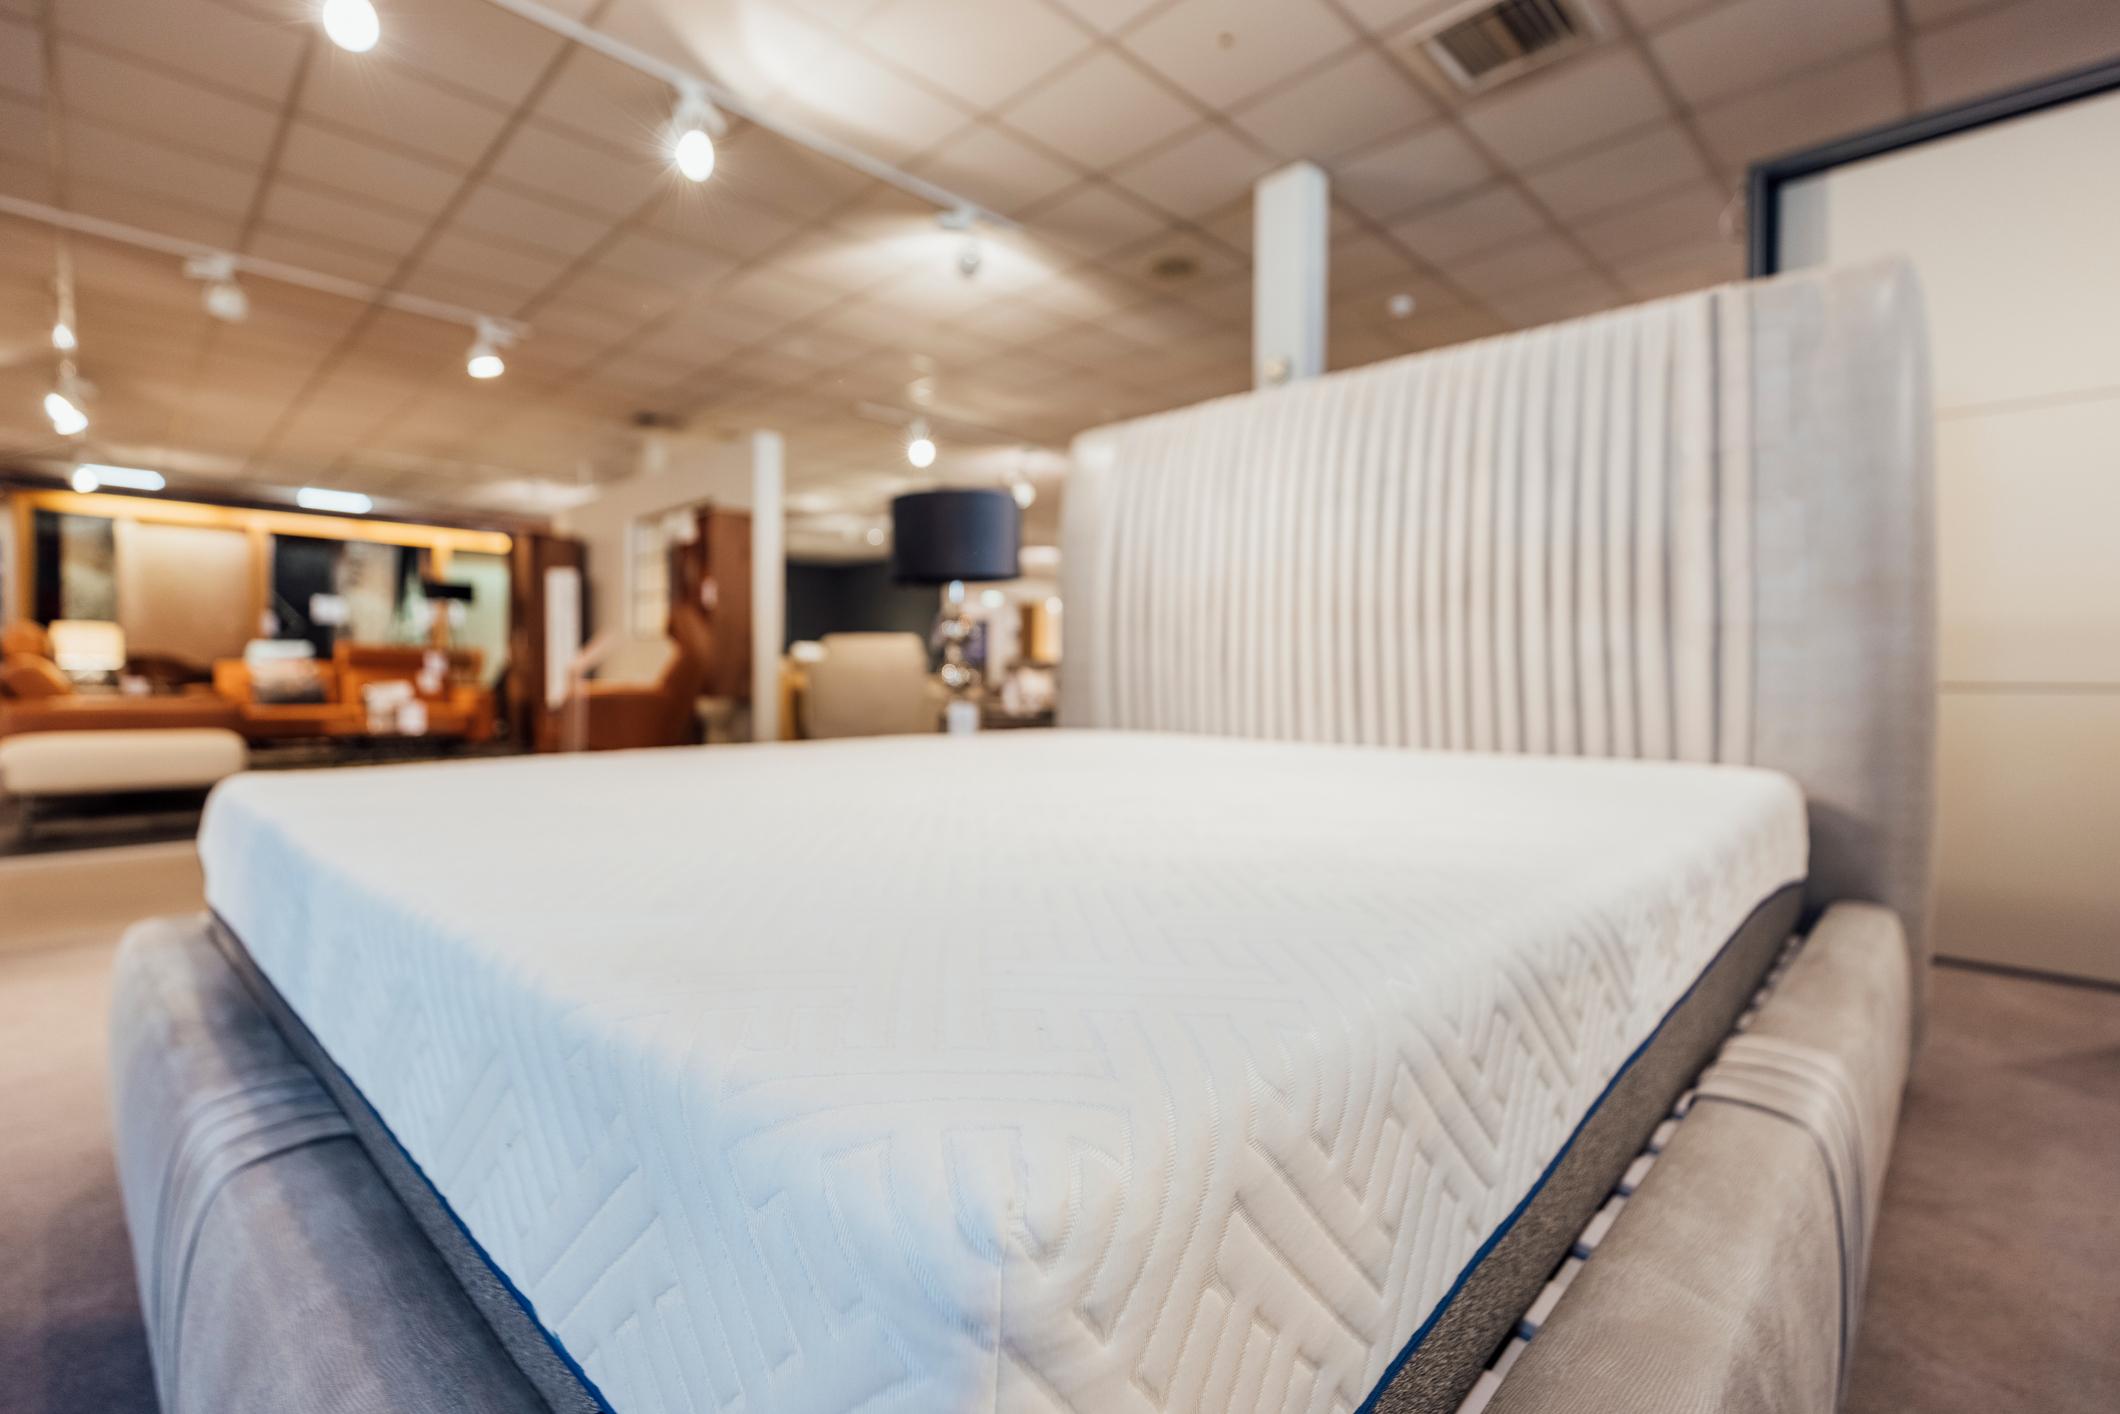  A mattress in a mattress store 